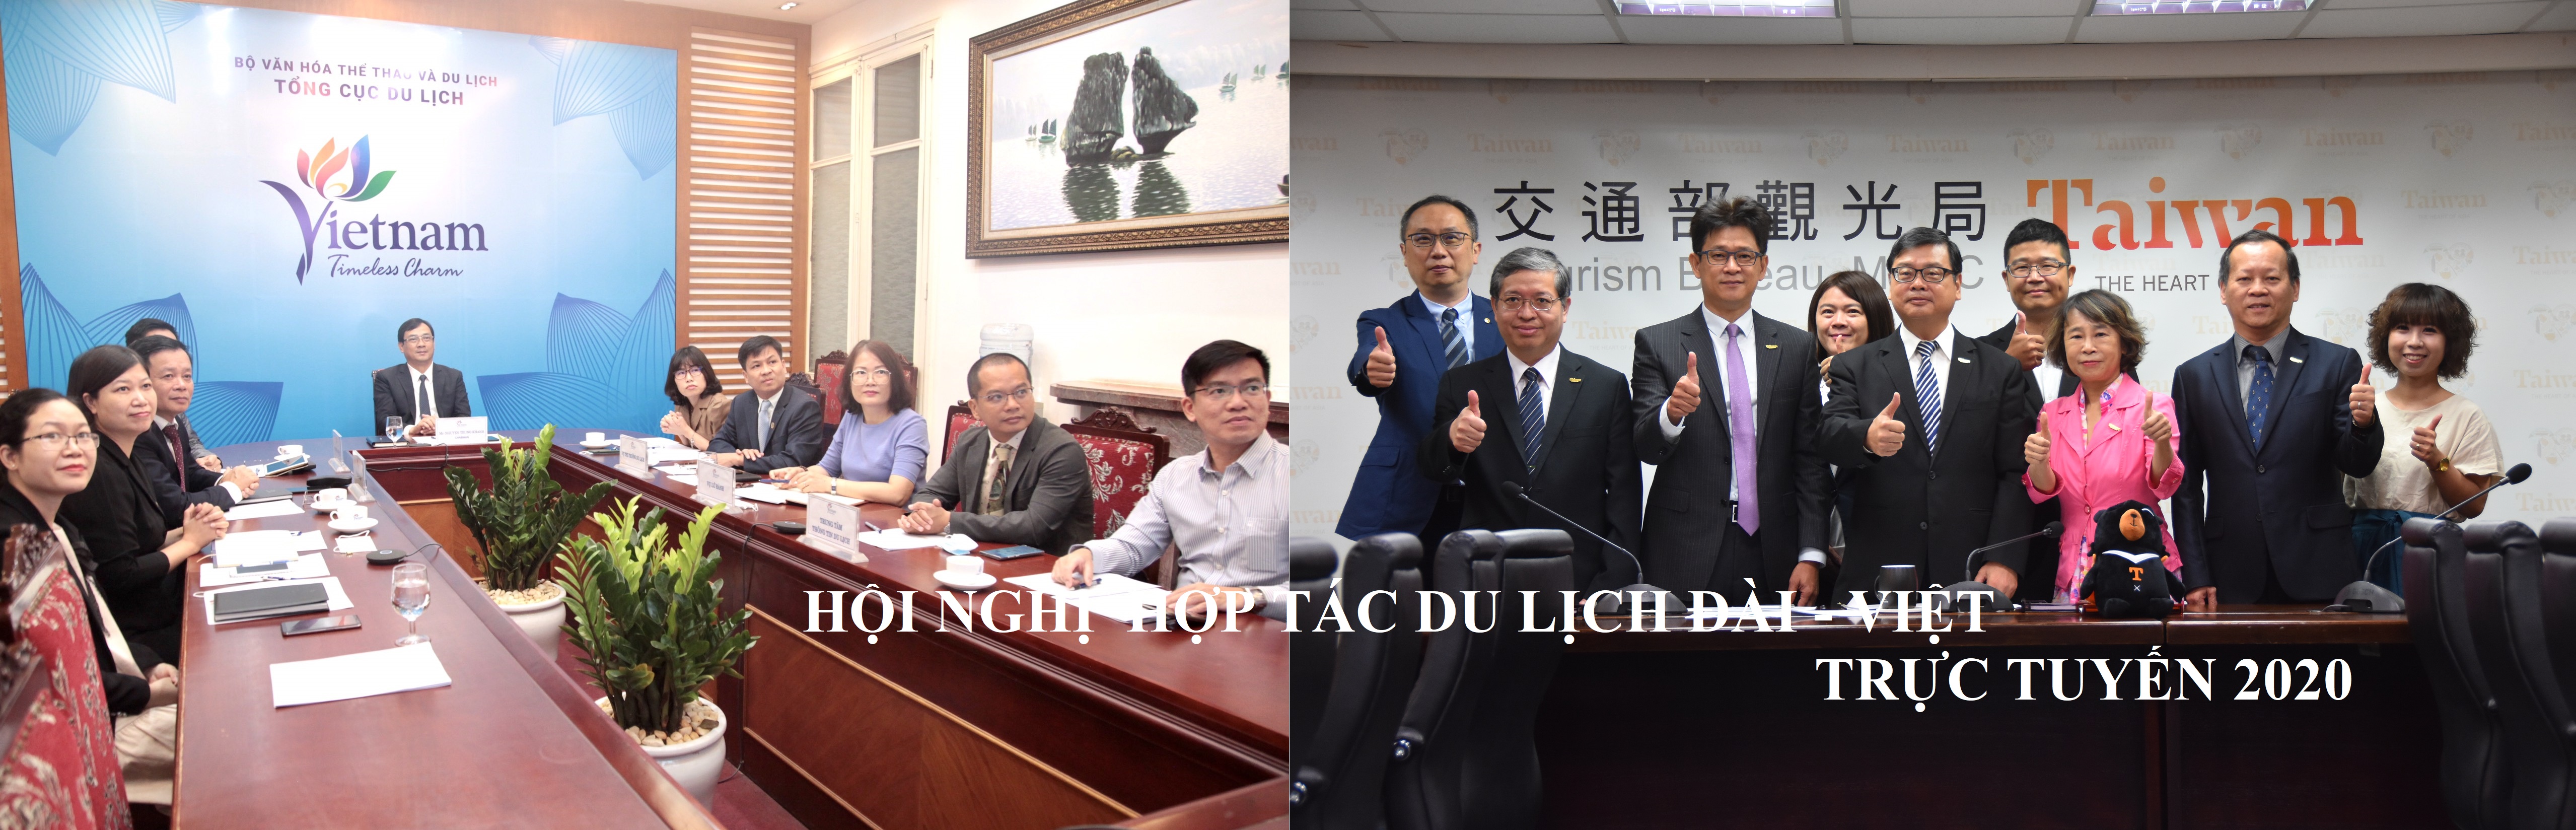 Cục du lịch Đài Loan mở hội nghị truyền hình liên 